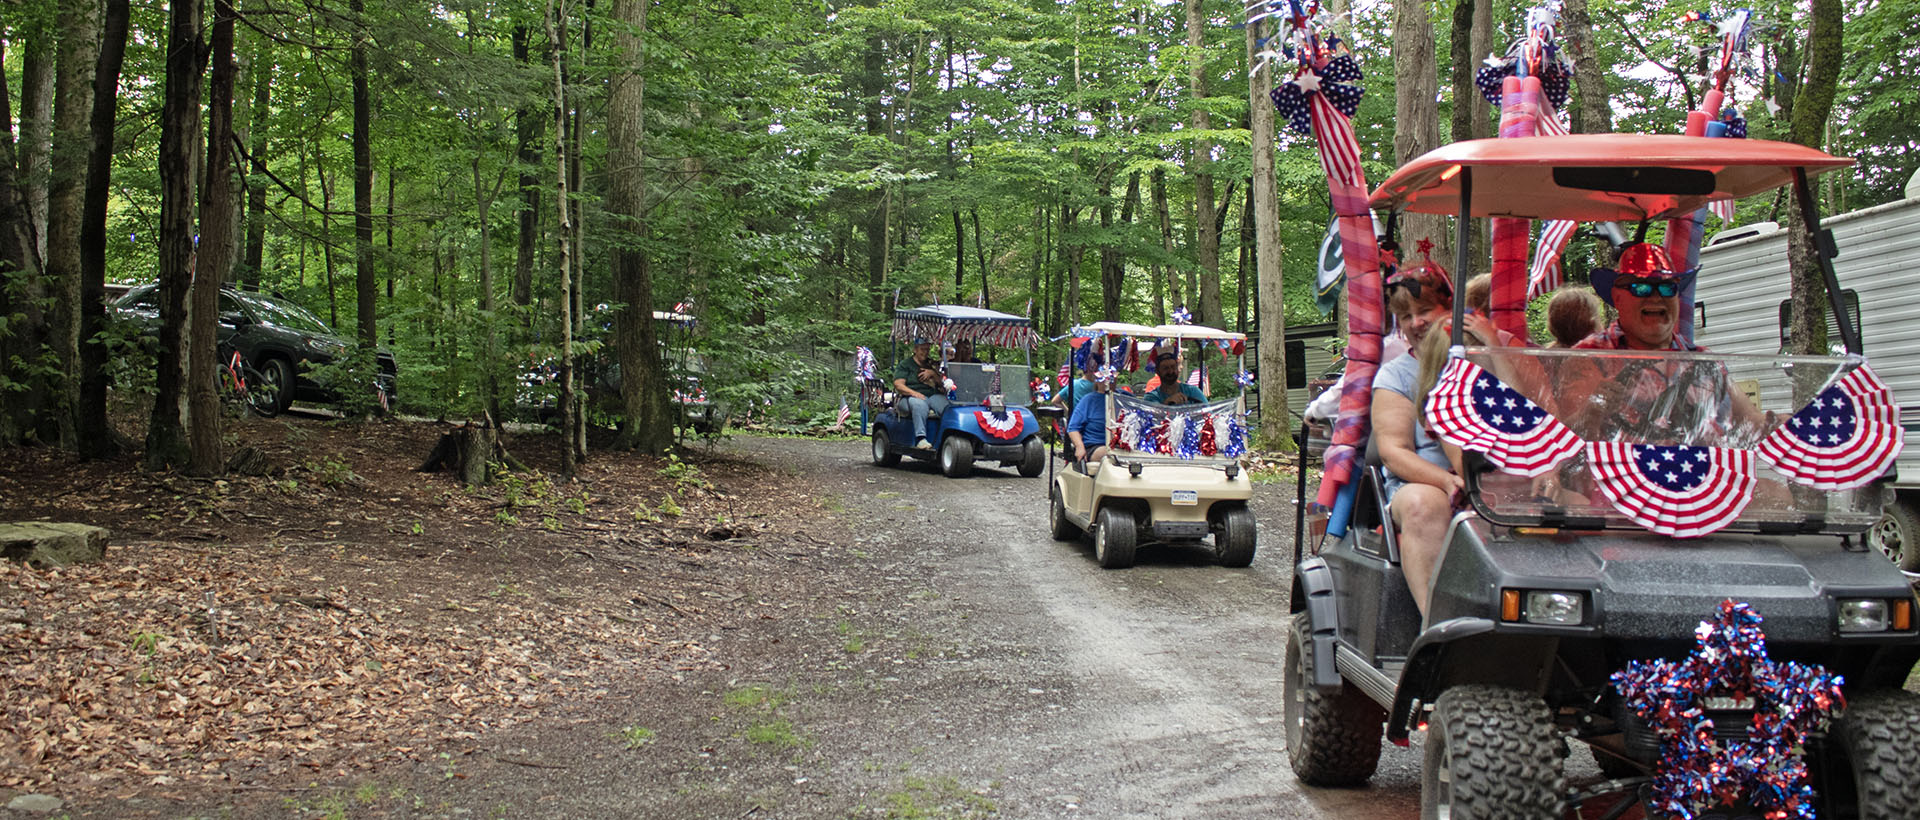 Golf cart parade at Lakeside Campground